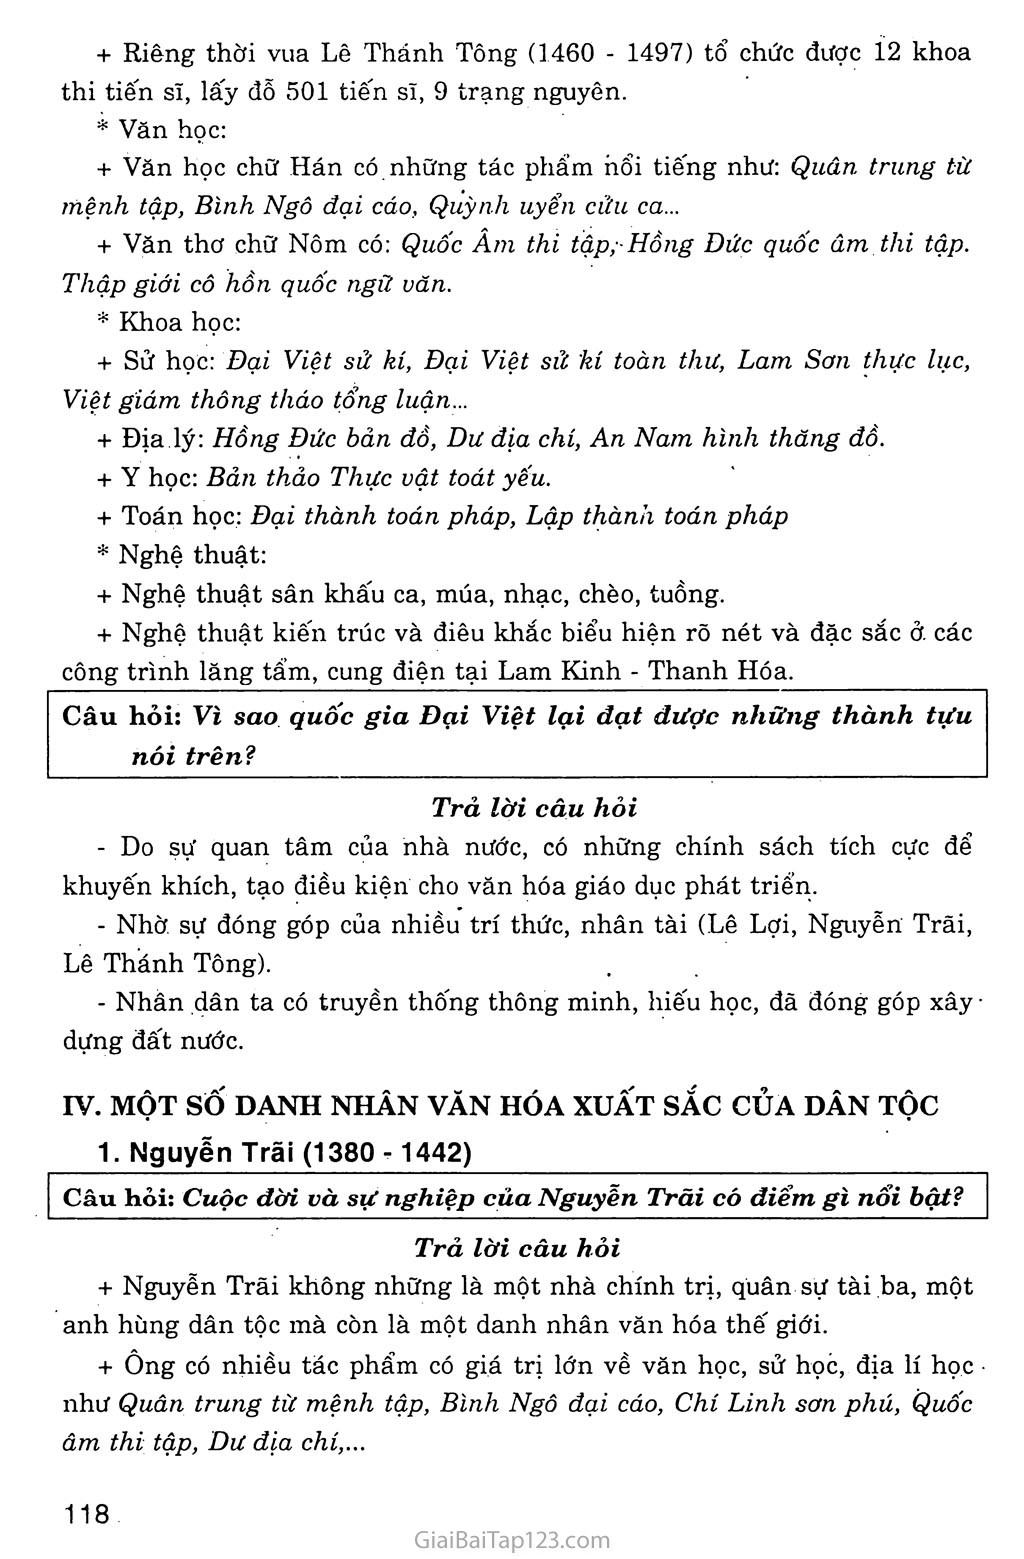 Bài 20: Nước Đại Việt thời Lê Sơ (1428 - 1527) trang 9